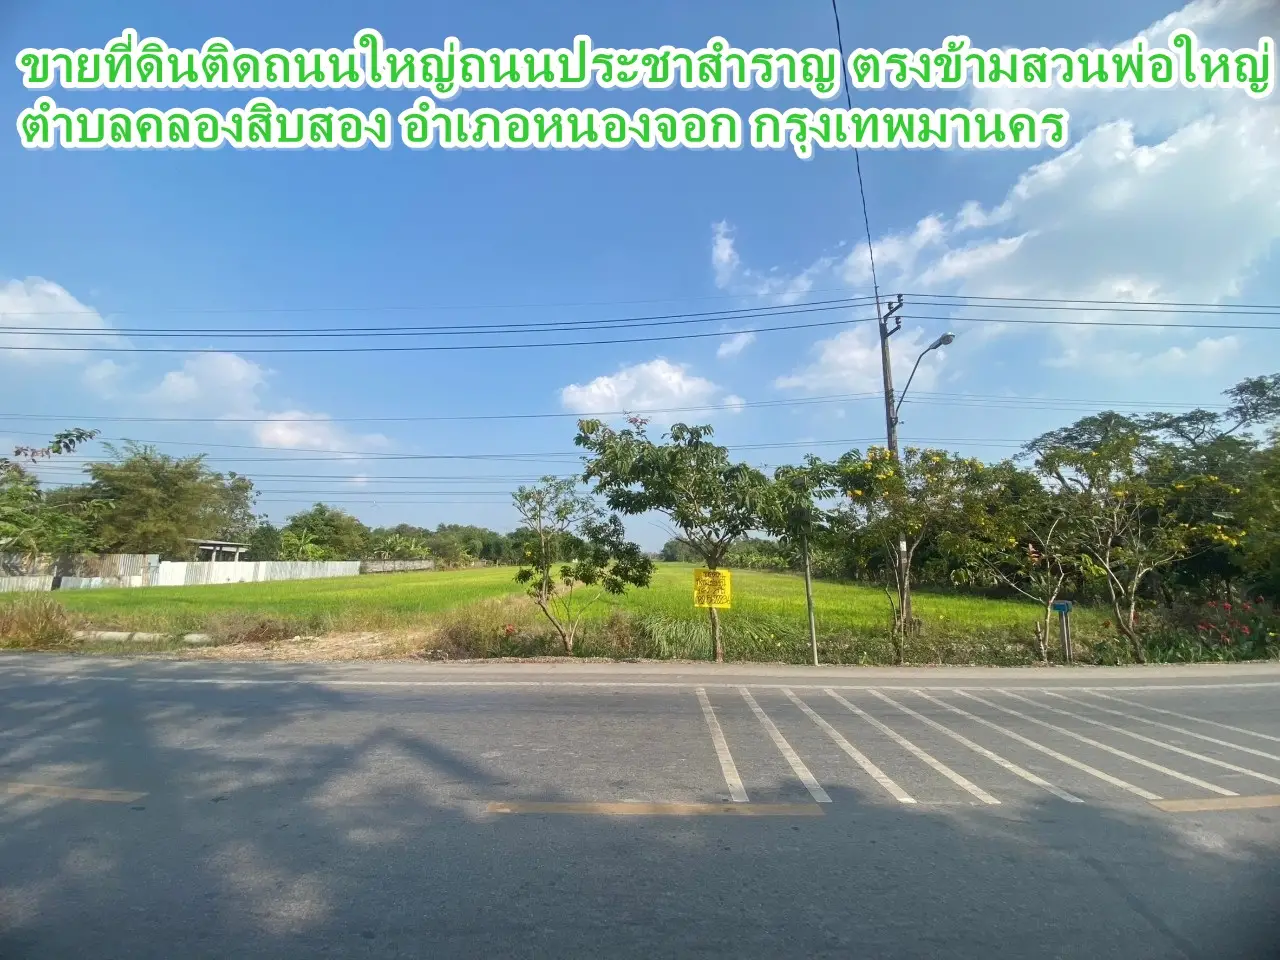 主要道路 Pracha Samran 路的待售土地。大父亲花园对面 曼谷 Nong Chok 区 Khlong Sip Song 街道